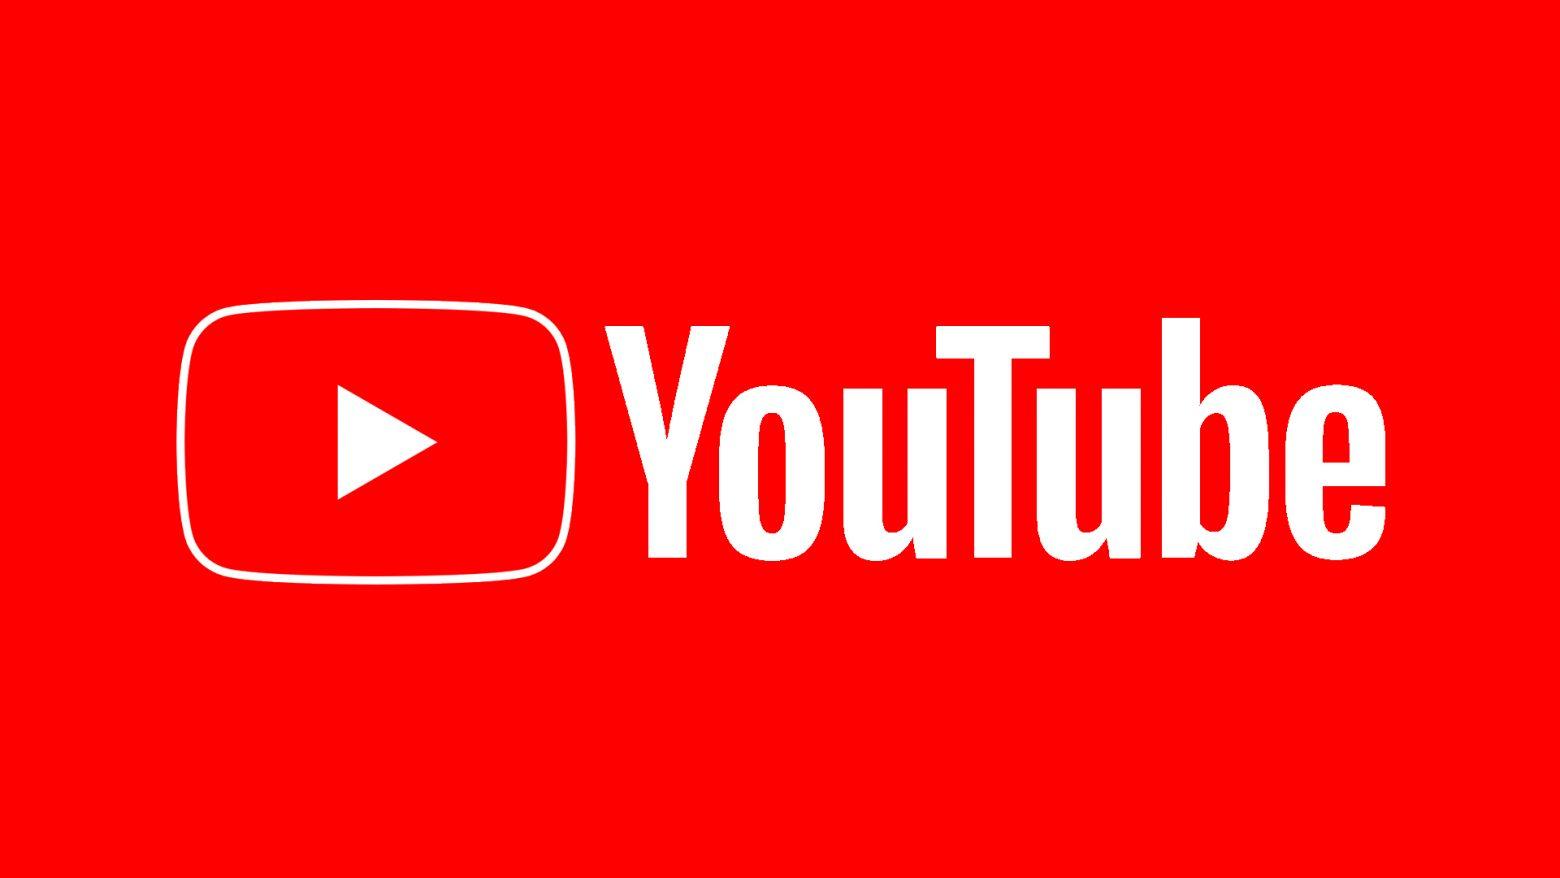 Το YouTube έγινε… 17 ετών! Η ιδέα που άλλαξε για πάντα τη μουσική βιομηχανία